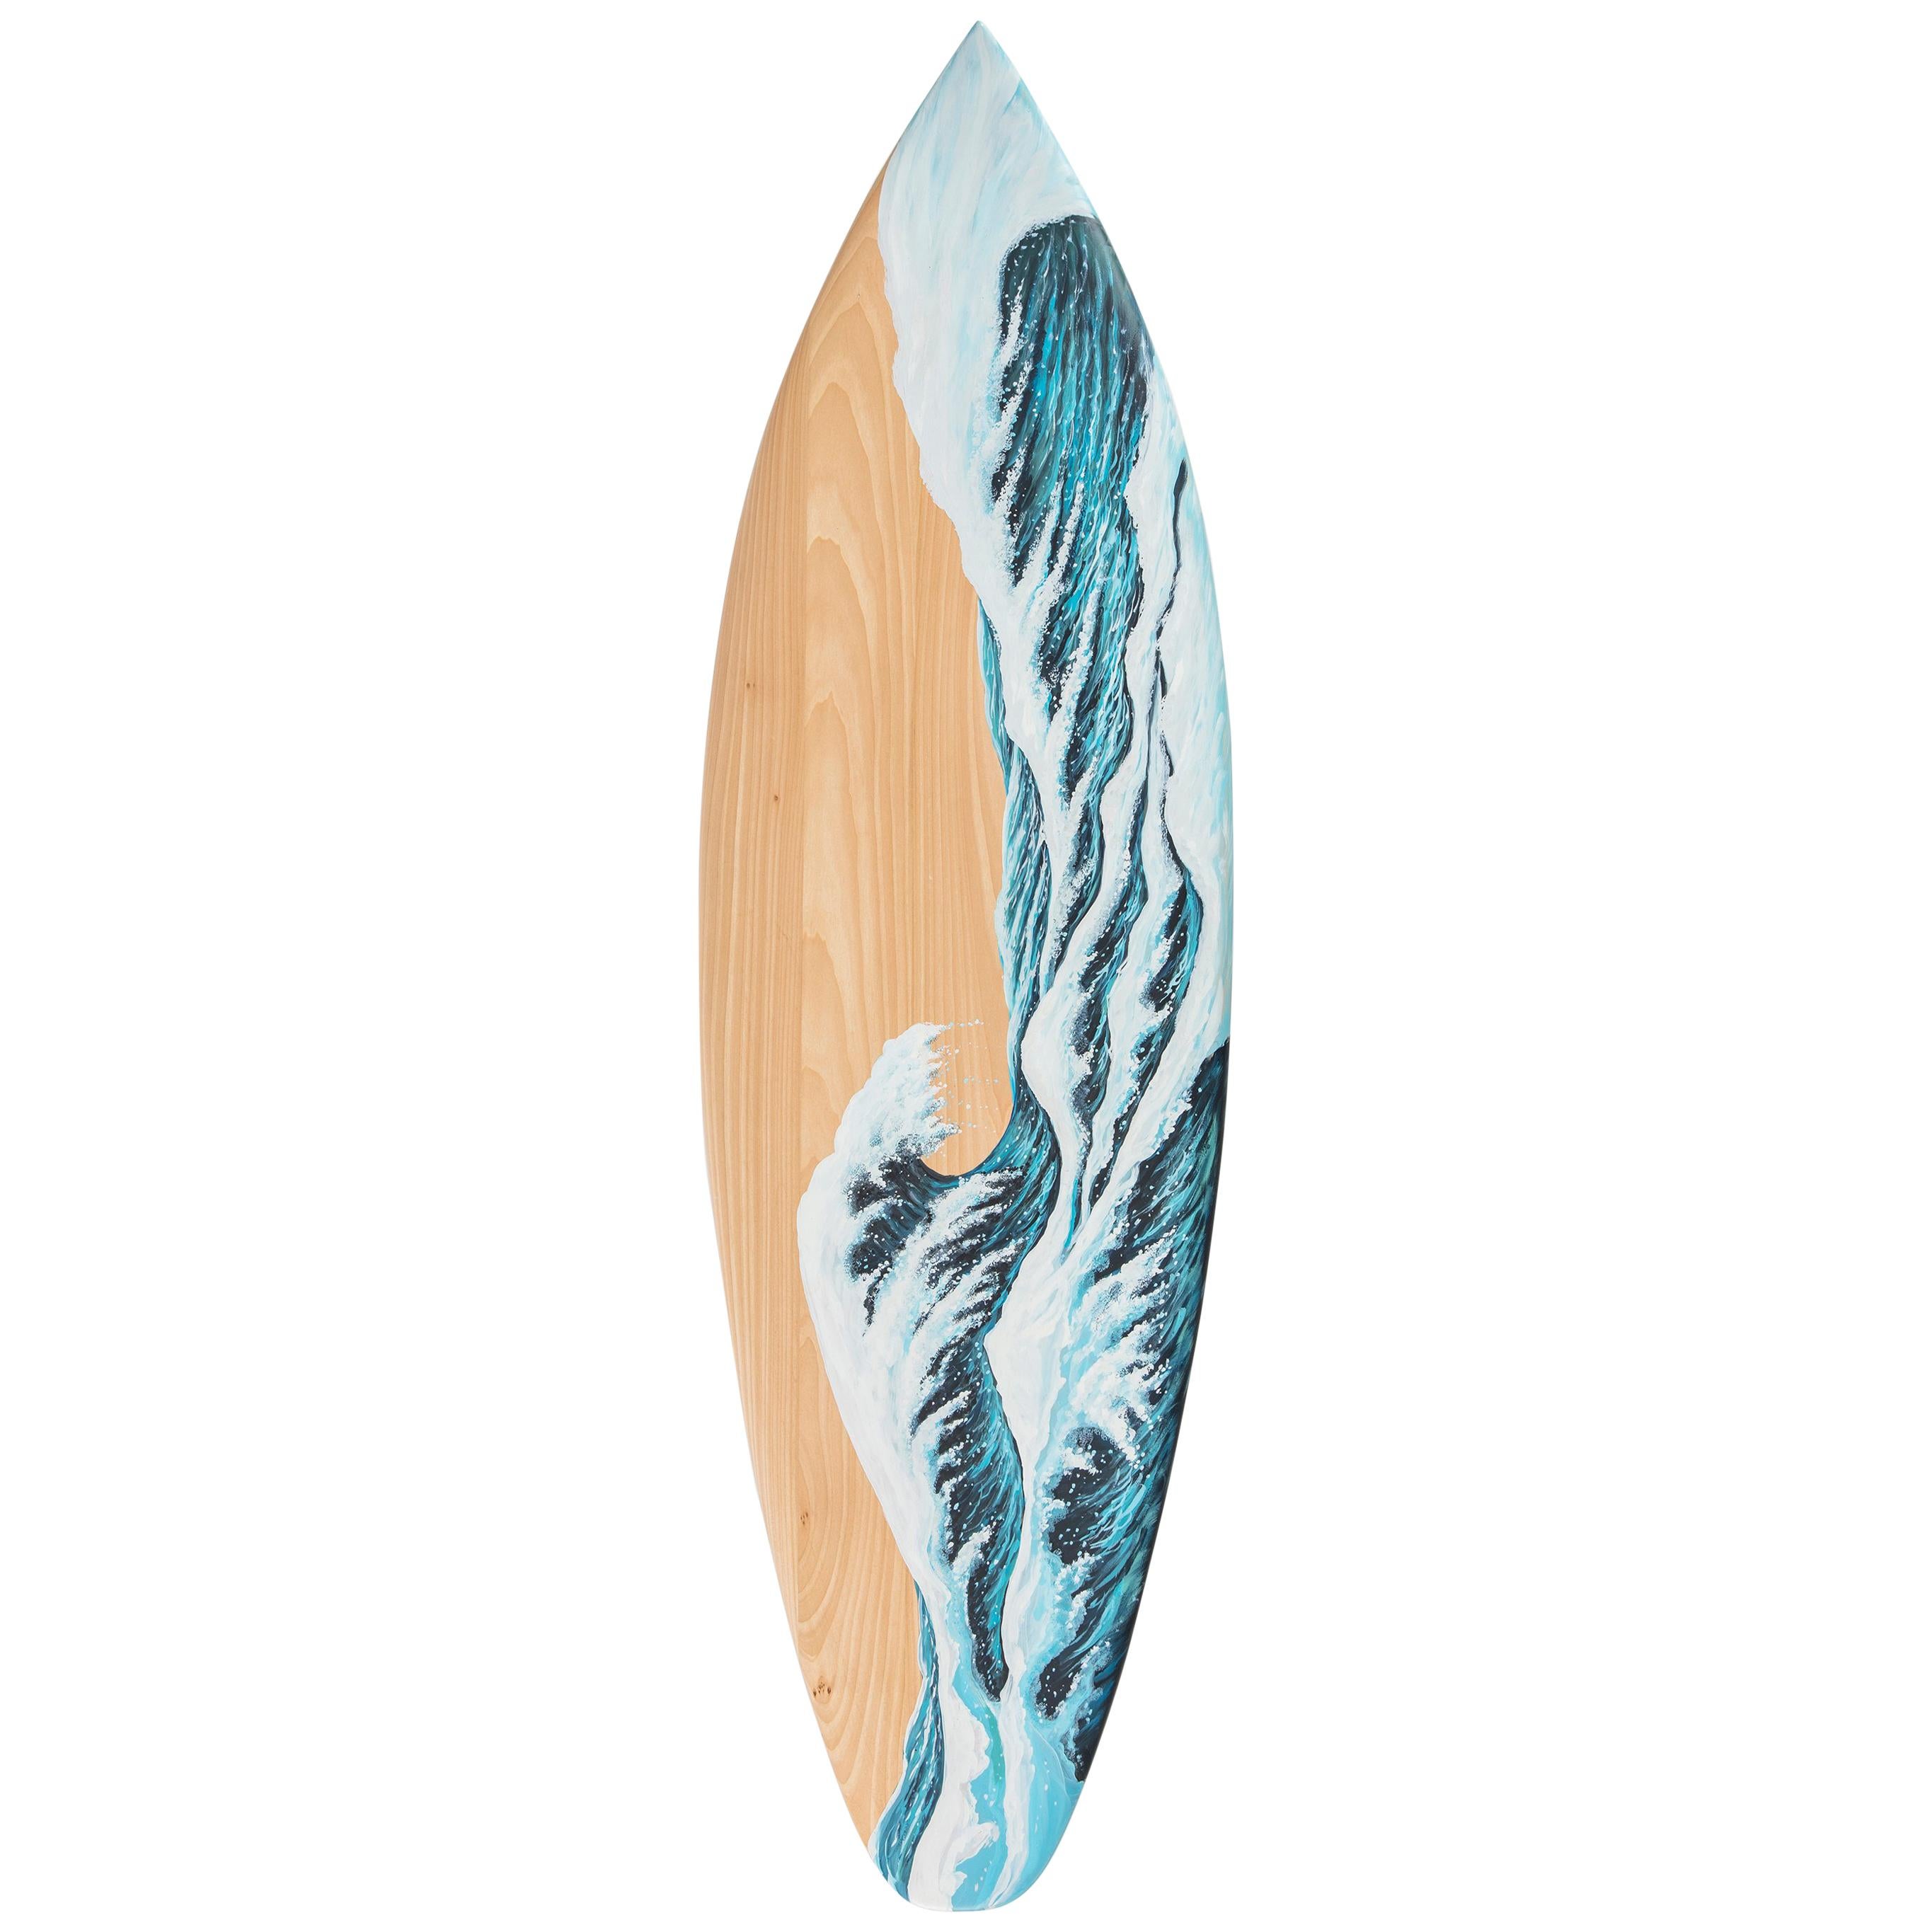 Handbemalte Motus-Surfbank aus Holz mit Marmorbeinen